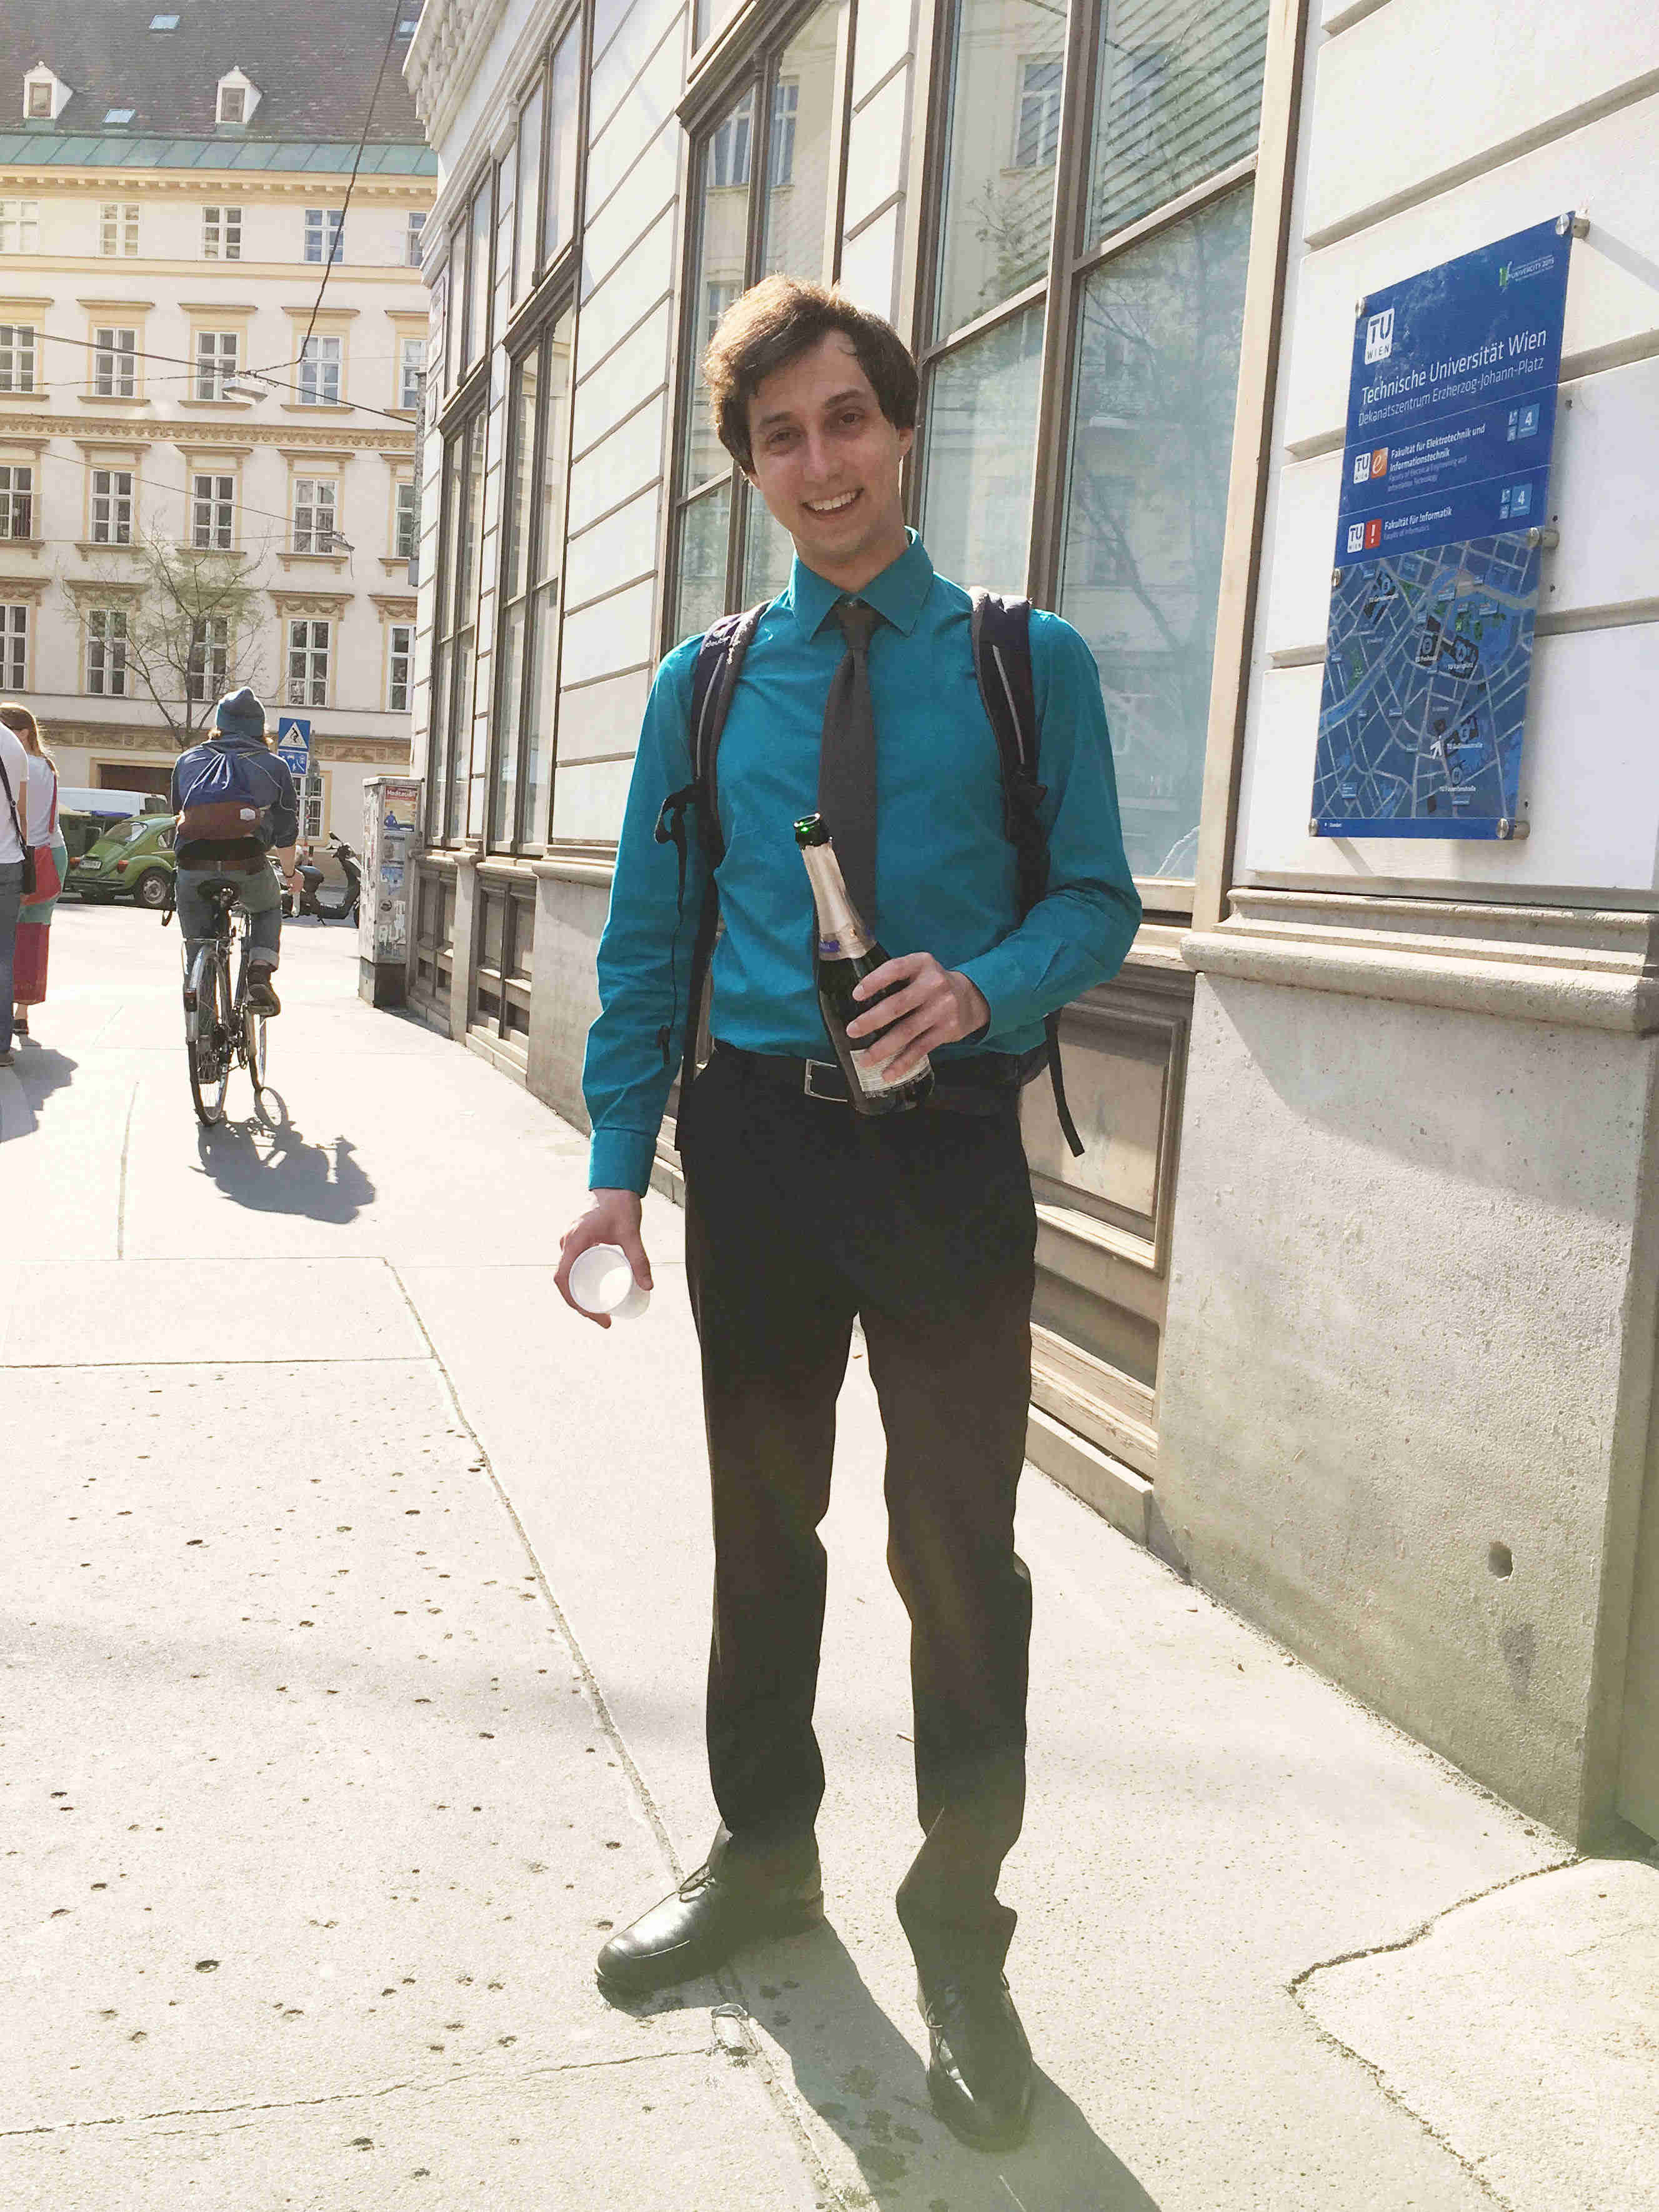 Bild eines Forschers in Hemd und Krawatte mit einer Sektflasche vor einem Universitätsgebäude.